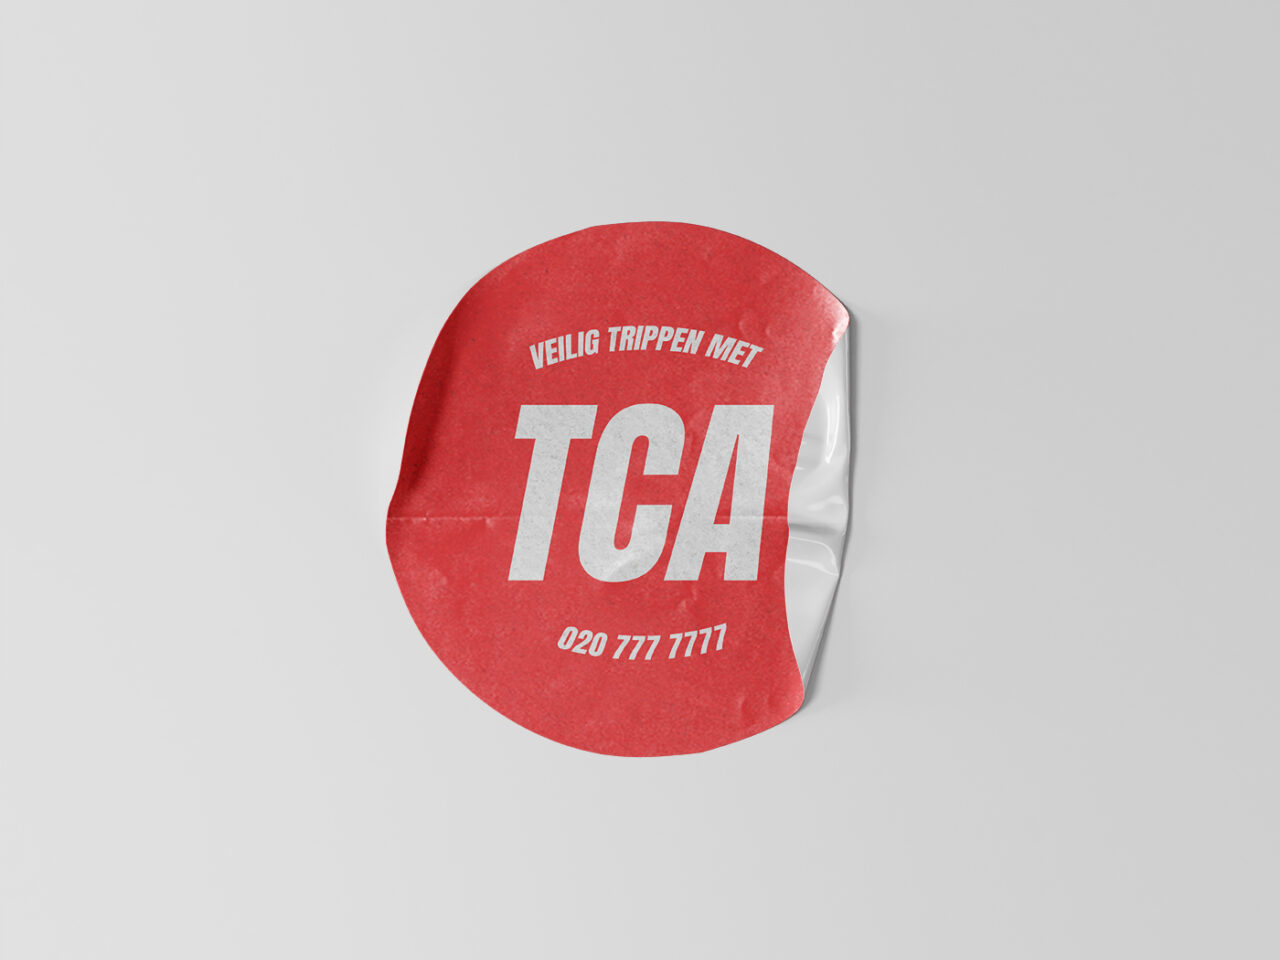 tca-sticker